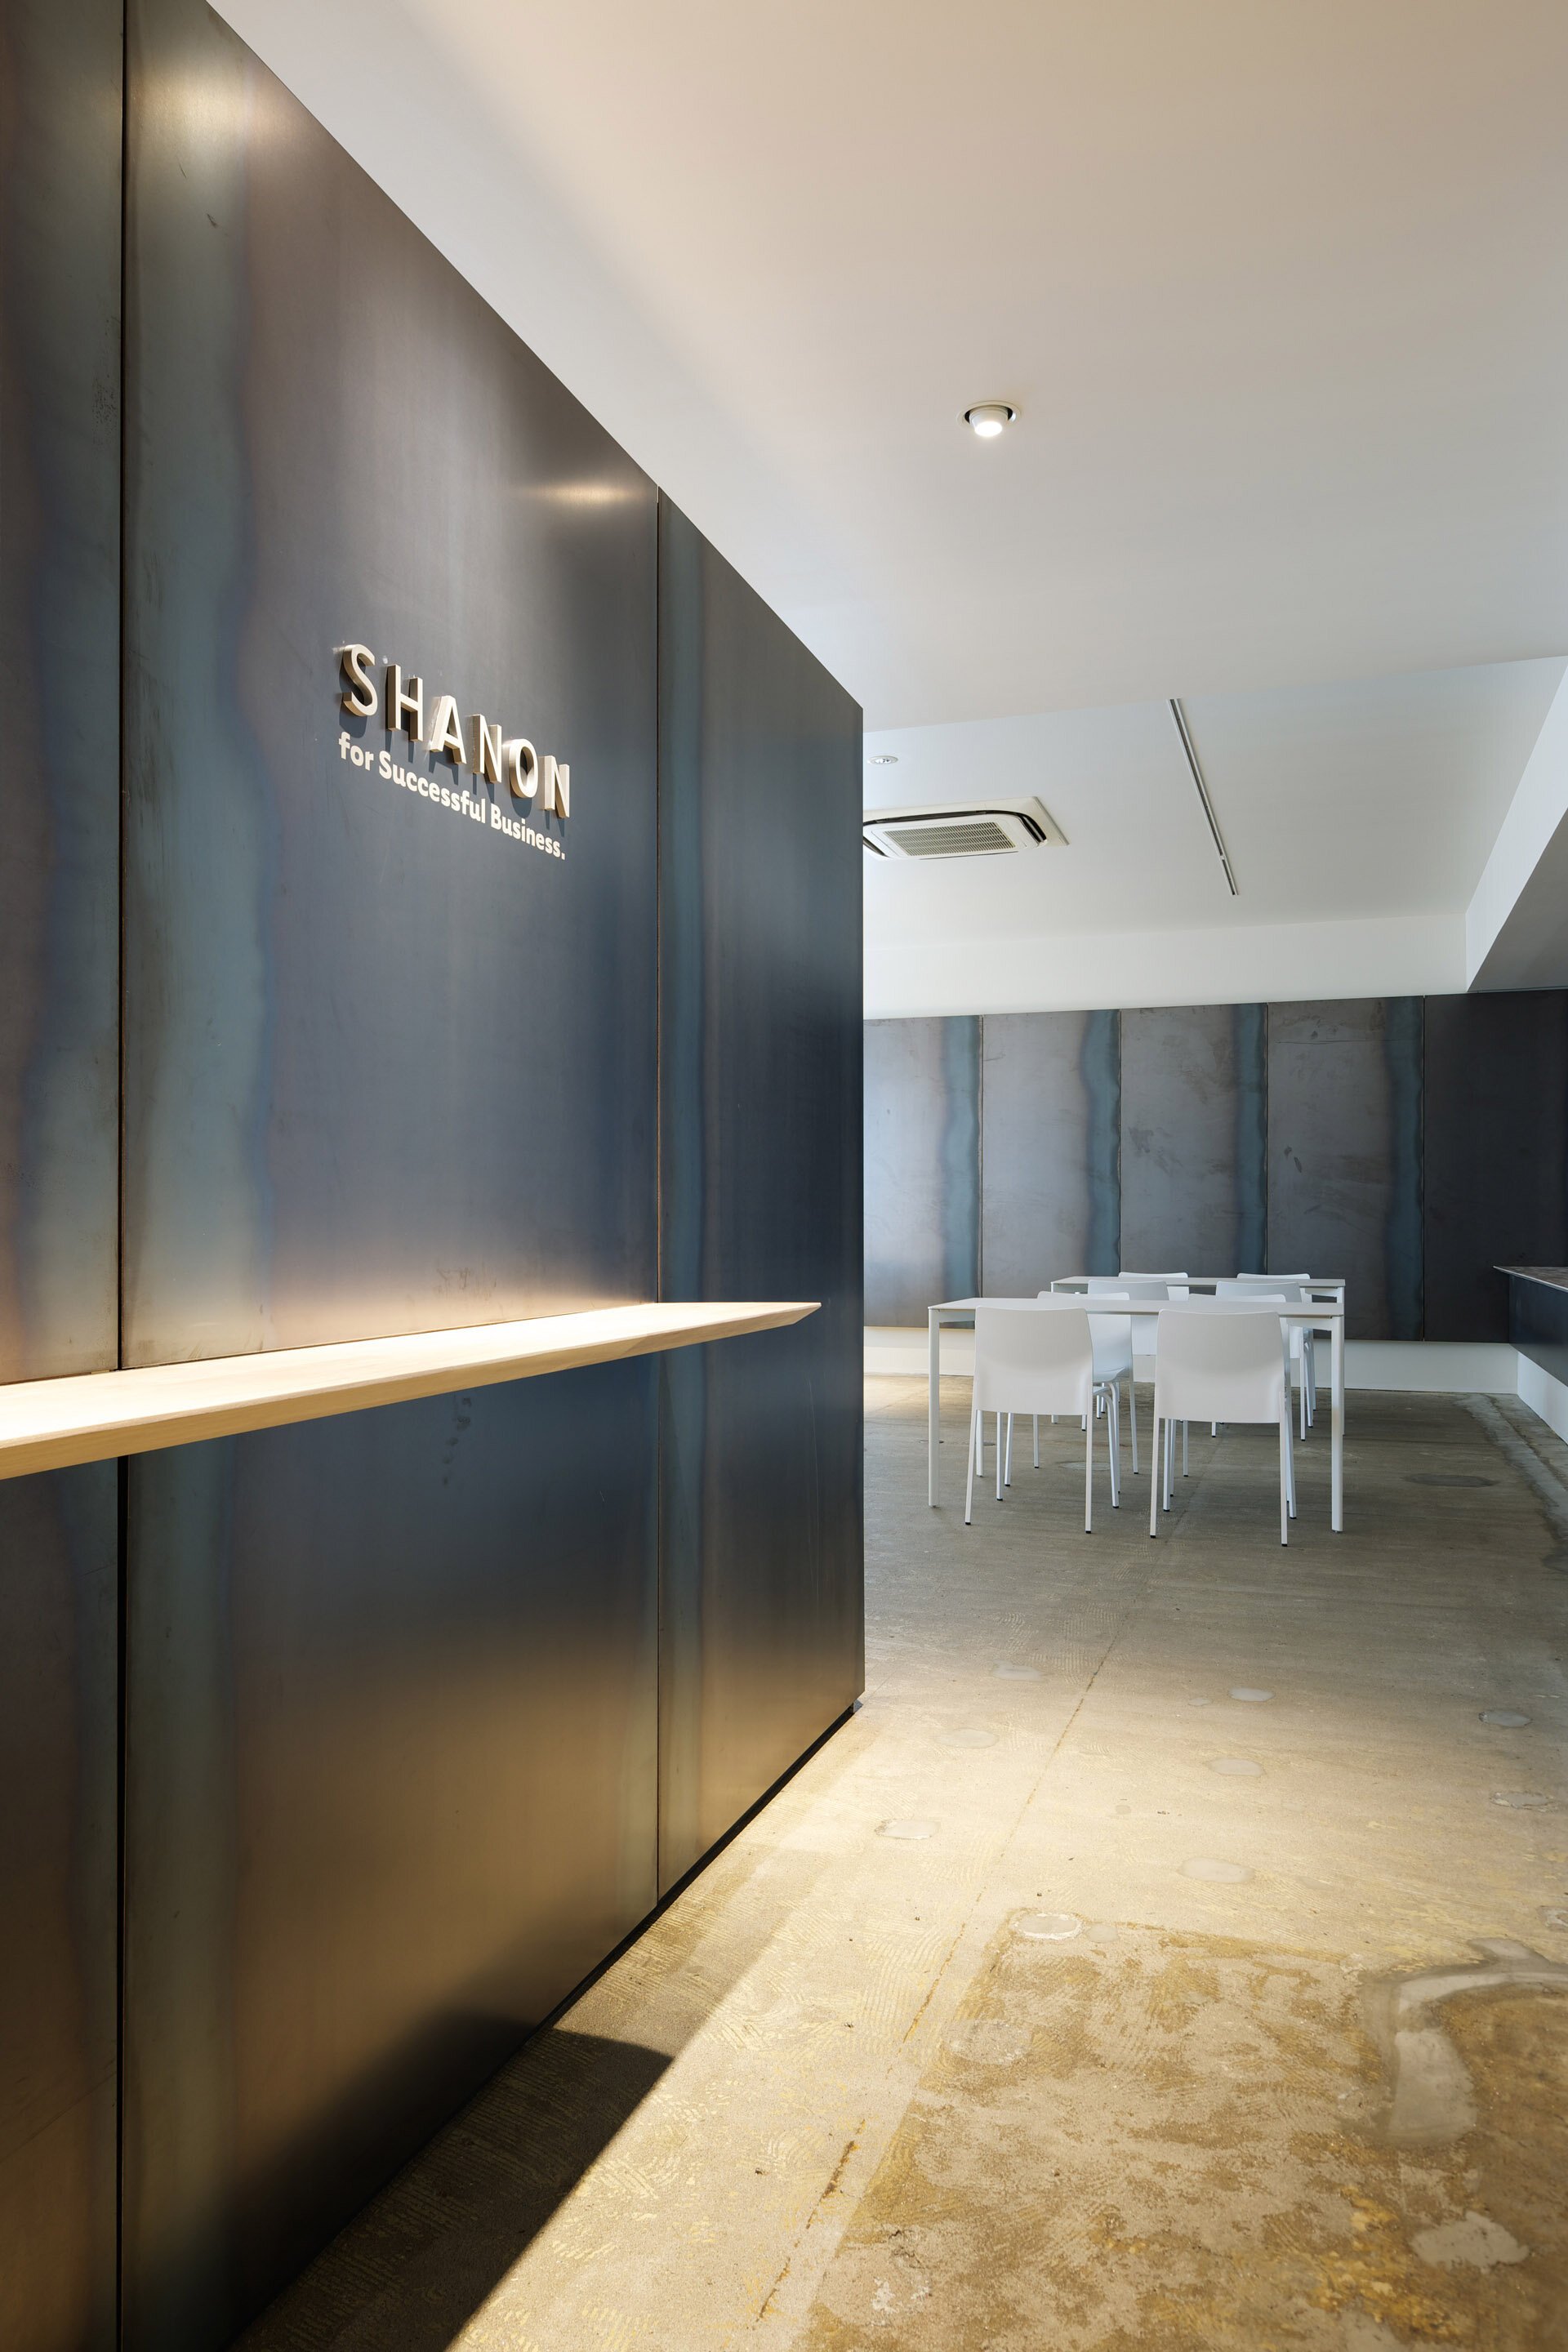 tomoyuki-sakakida-shanon-office-interior-design-tokyo-japan-idreit-01s.jpg